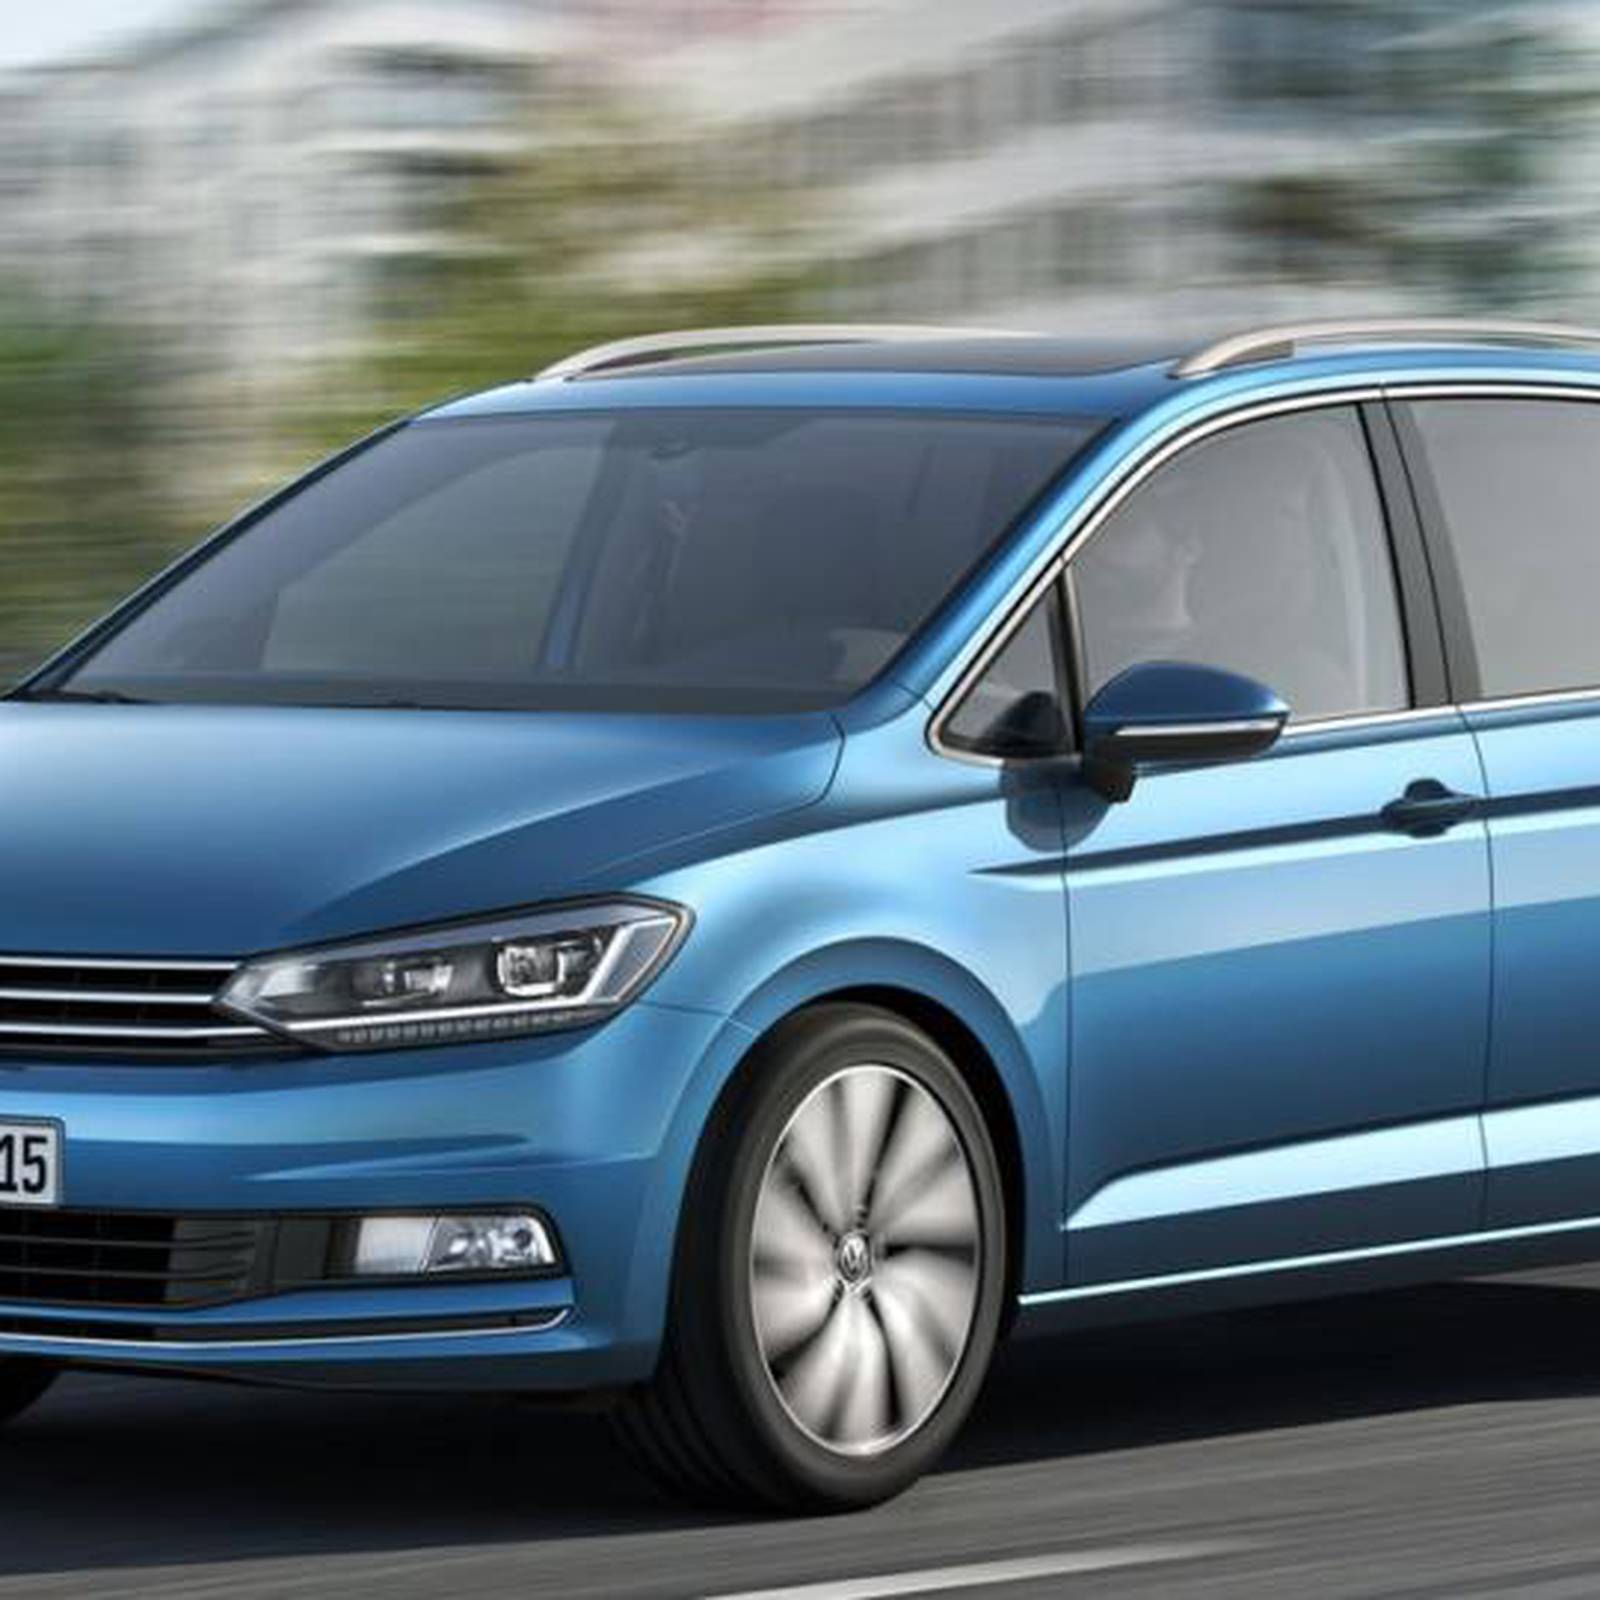 New VW Touran unveiled – The Irish Times